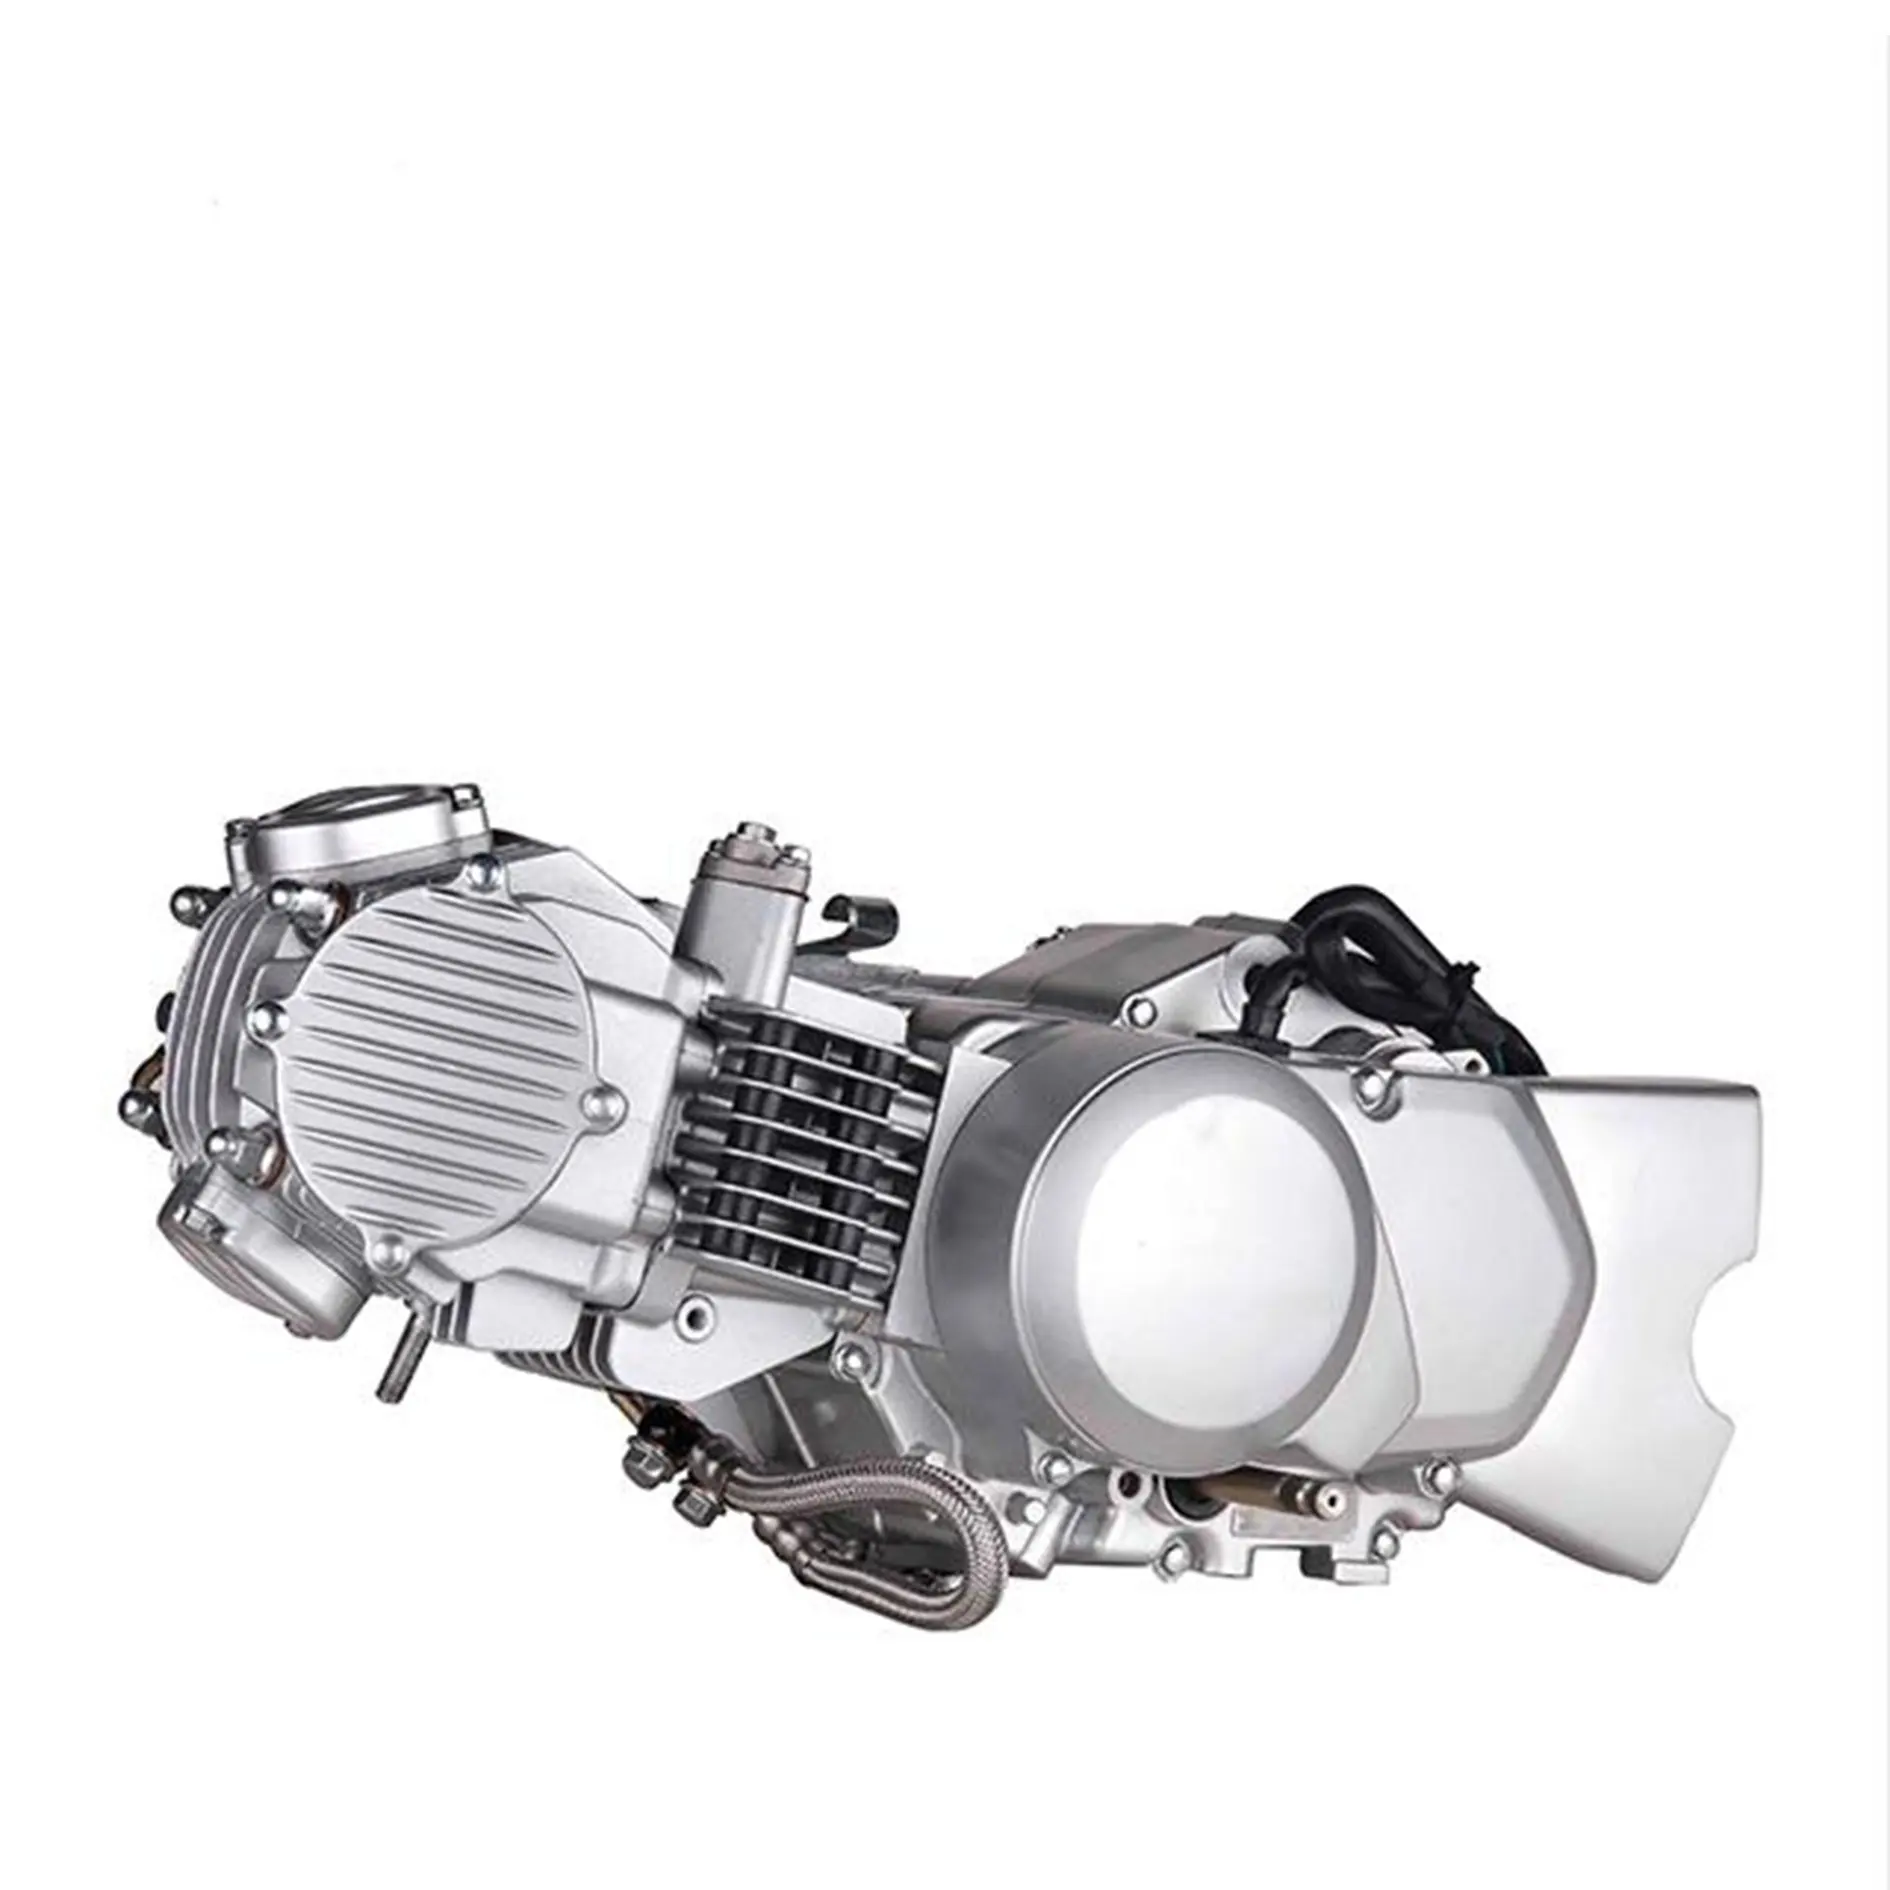 Motor de motocicleta Zongshen de 150cc de alta calidad, motor de 4 tiempos, ZS1P60YMJ, a la venta, 2017